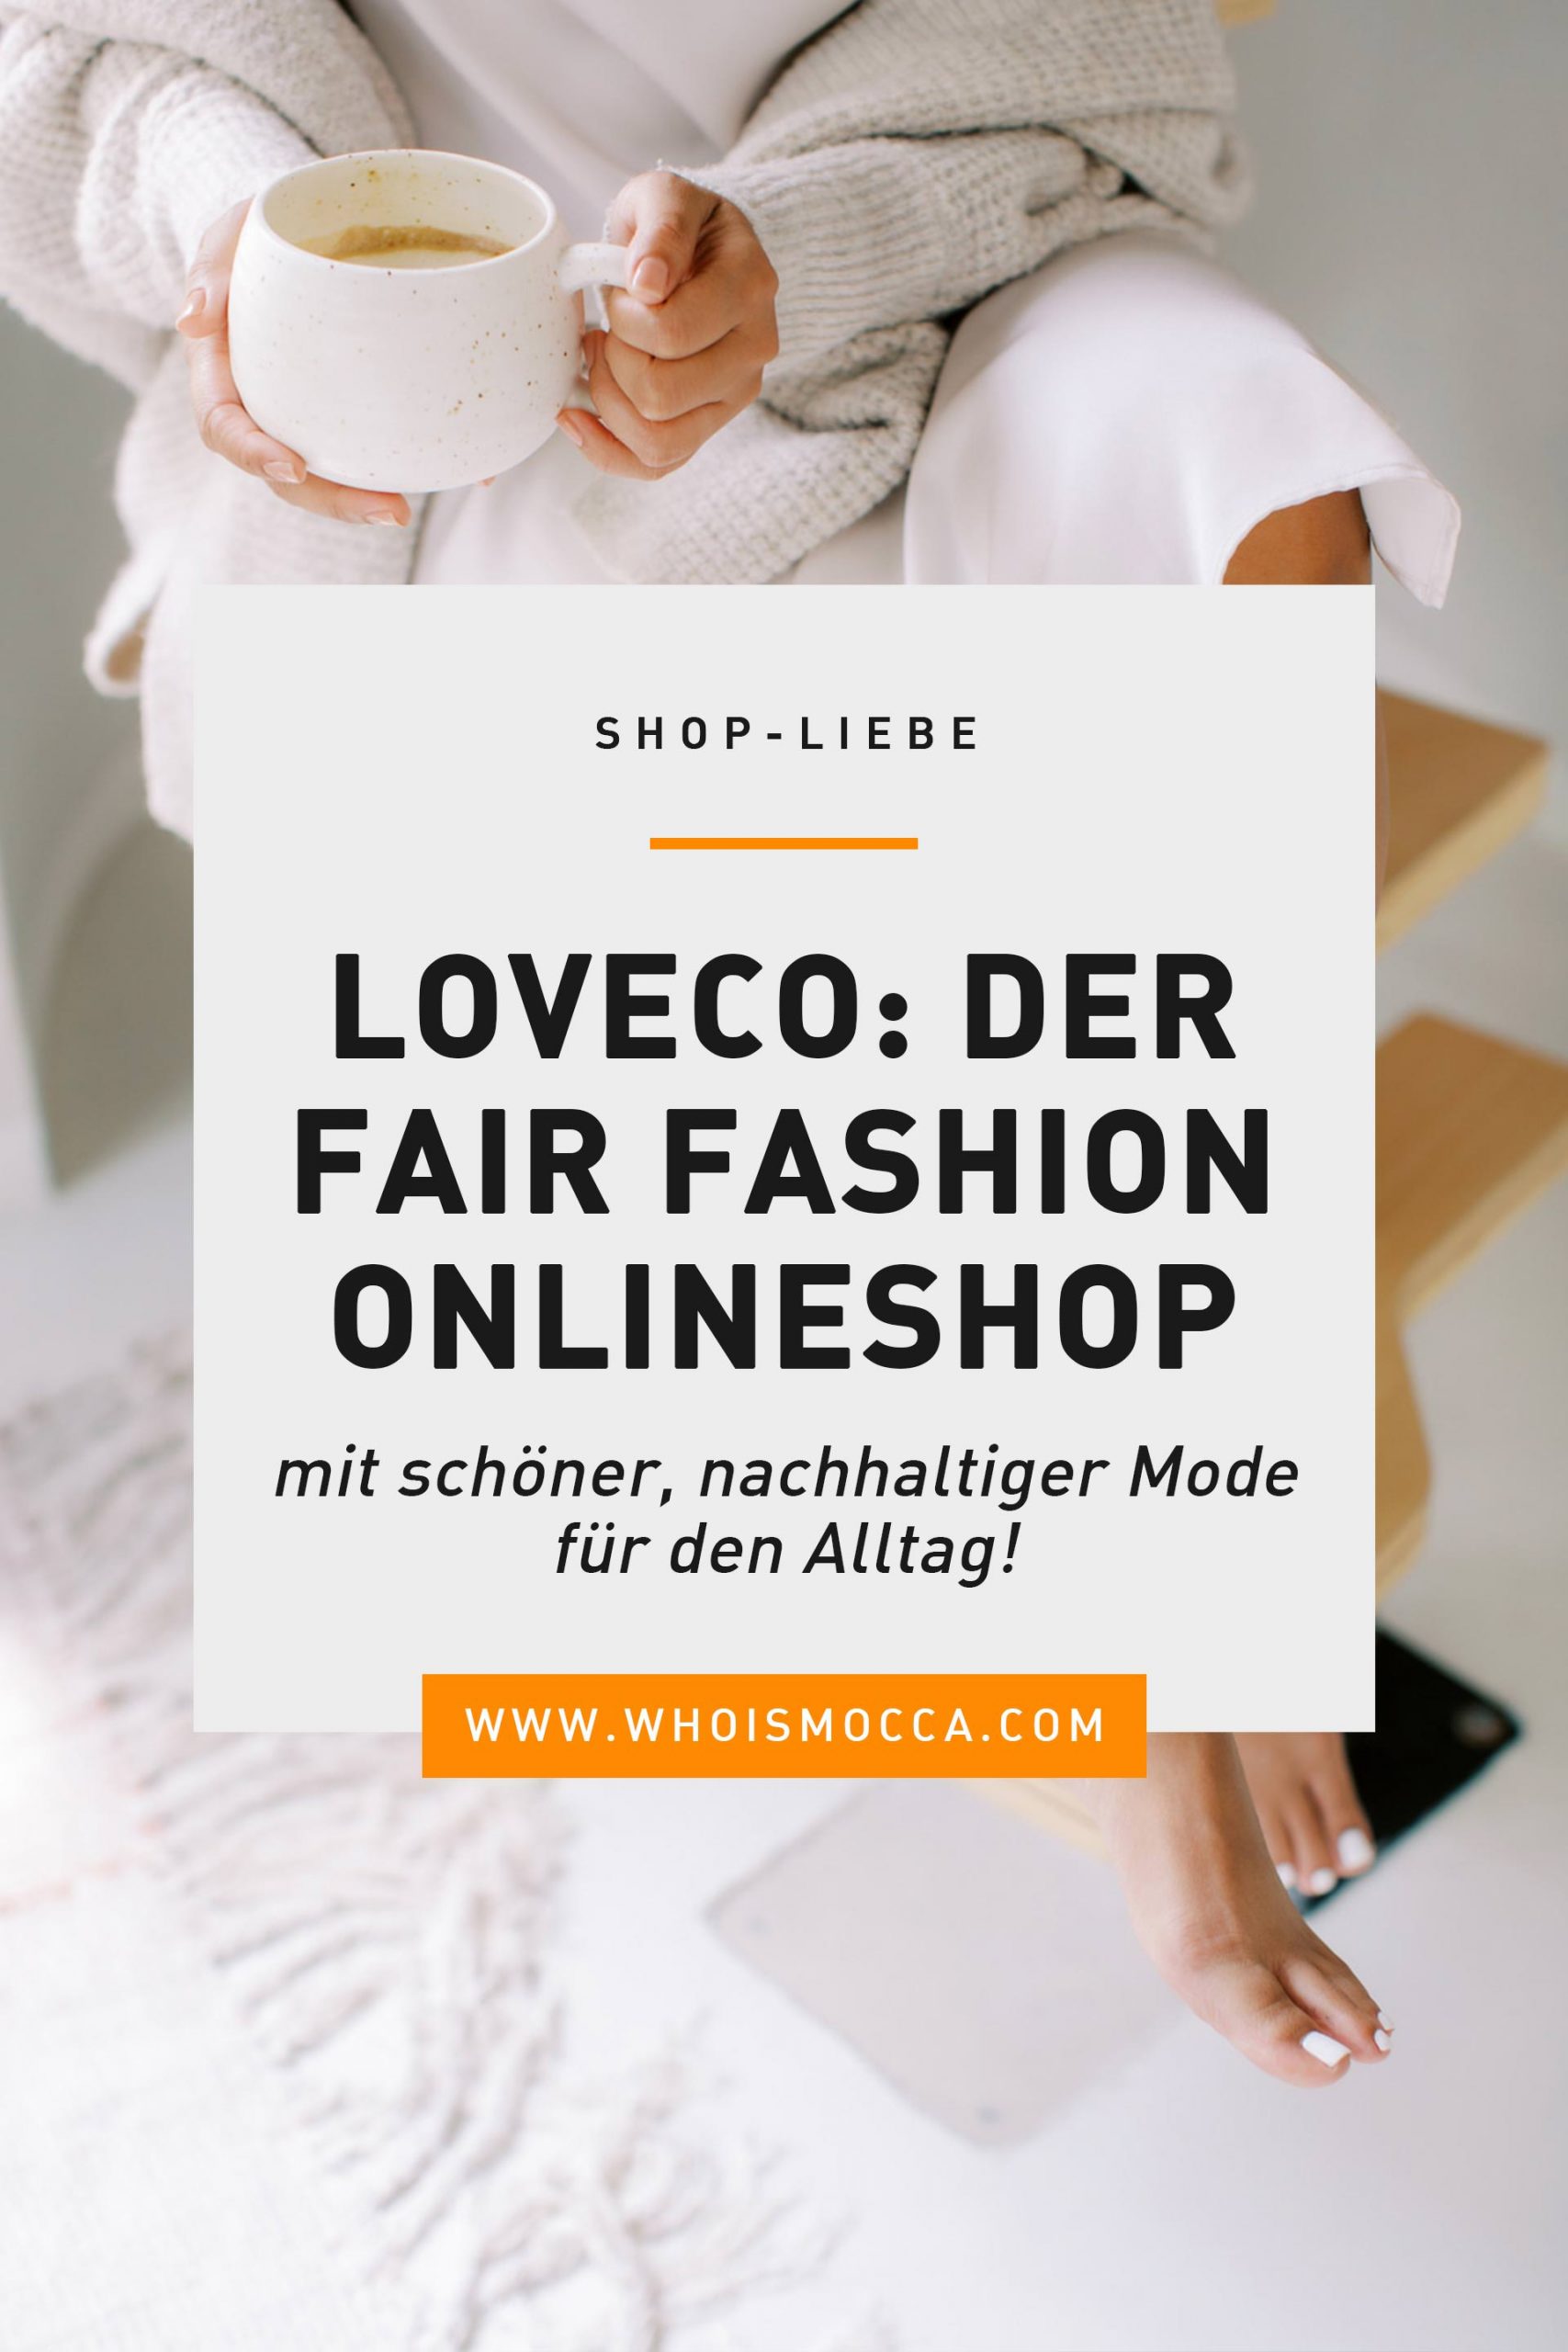 Am Modeblog stelle ich dir heute einen meiner liebsten Fair Fashion Onlineshops vor, wo es richtig schöne nachhaltige Modemarken für den Alltag gibt. www.whoismocca.com